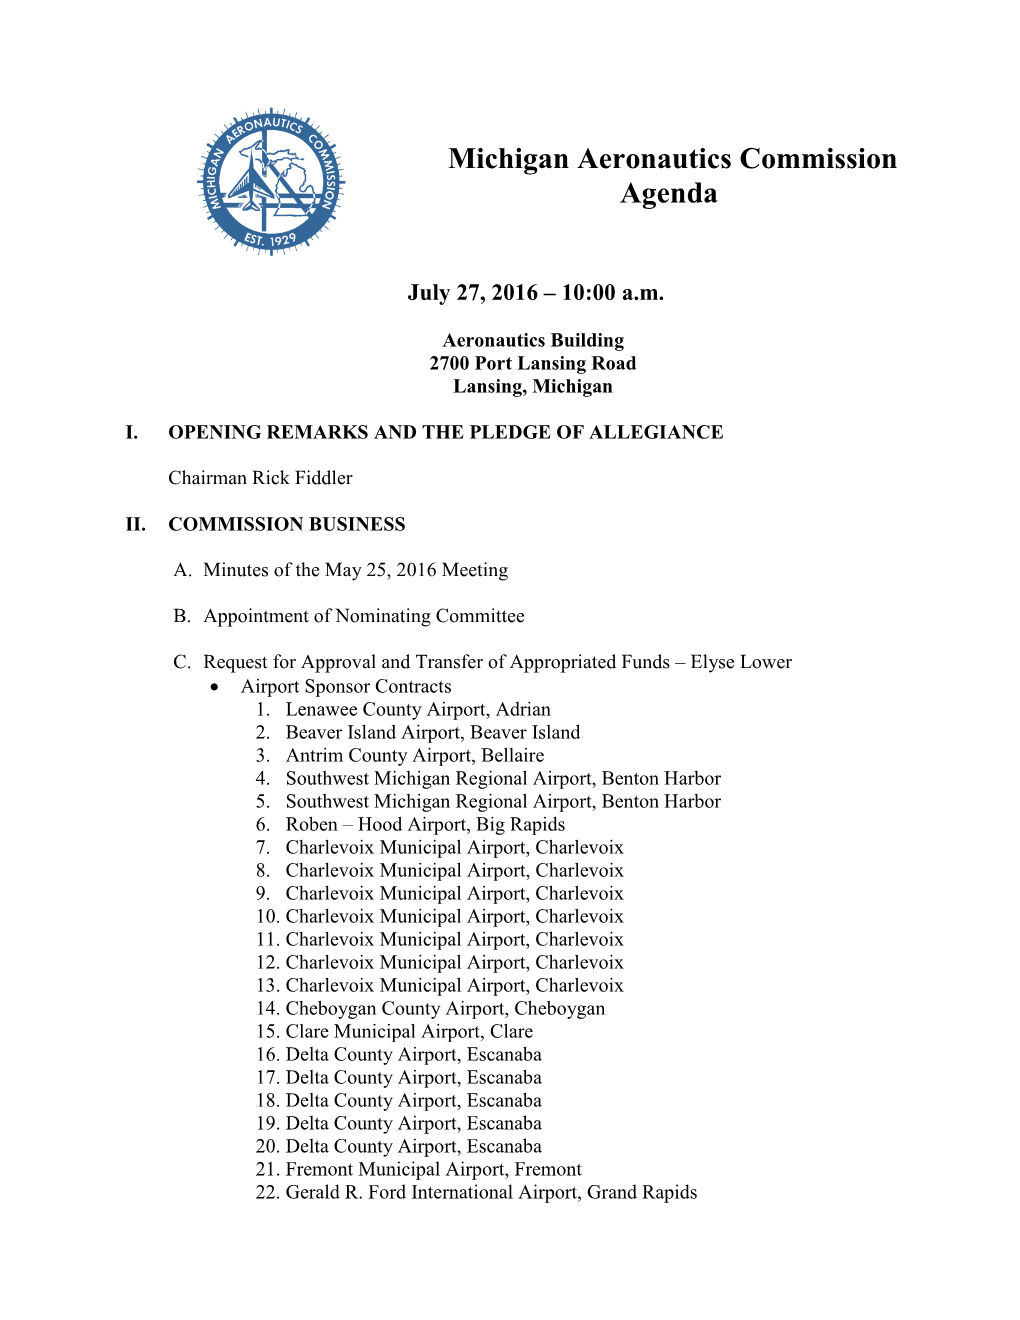 Michigan Aeronautics Commission Agenda